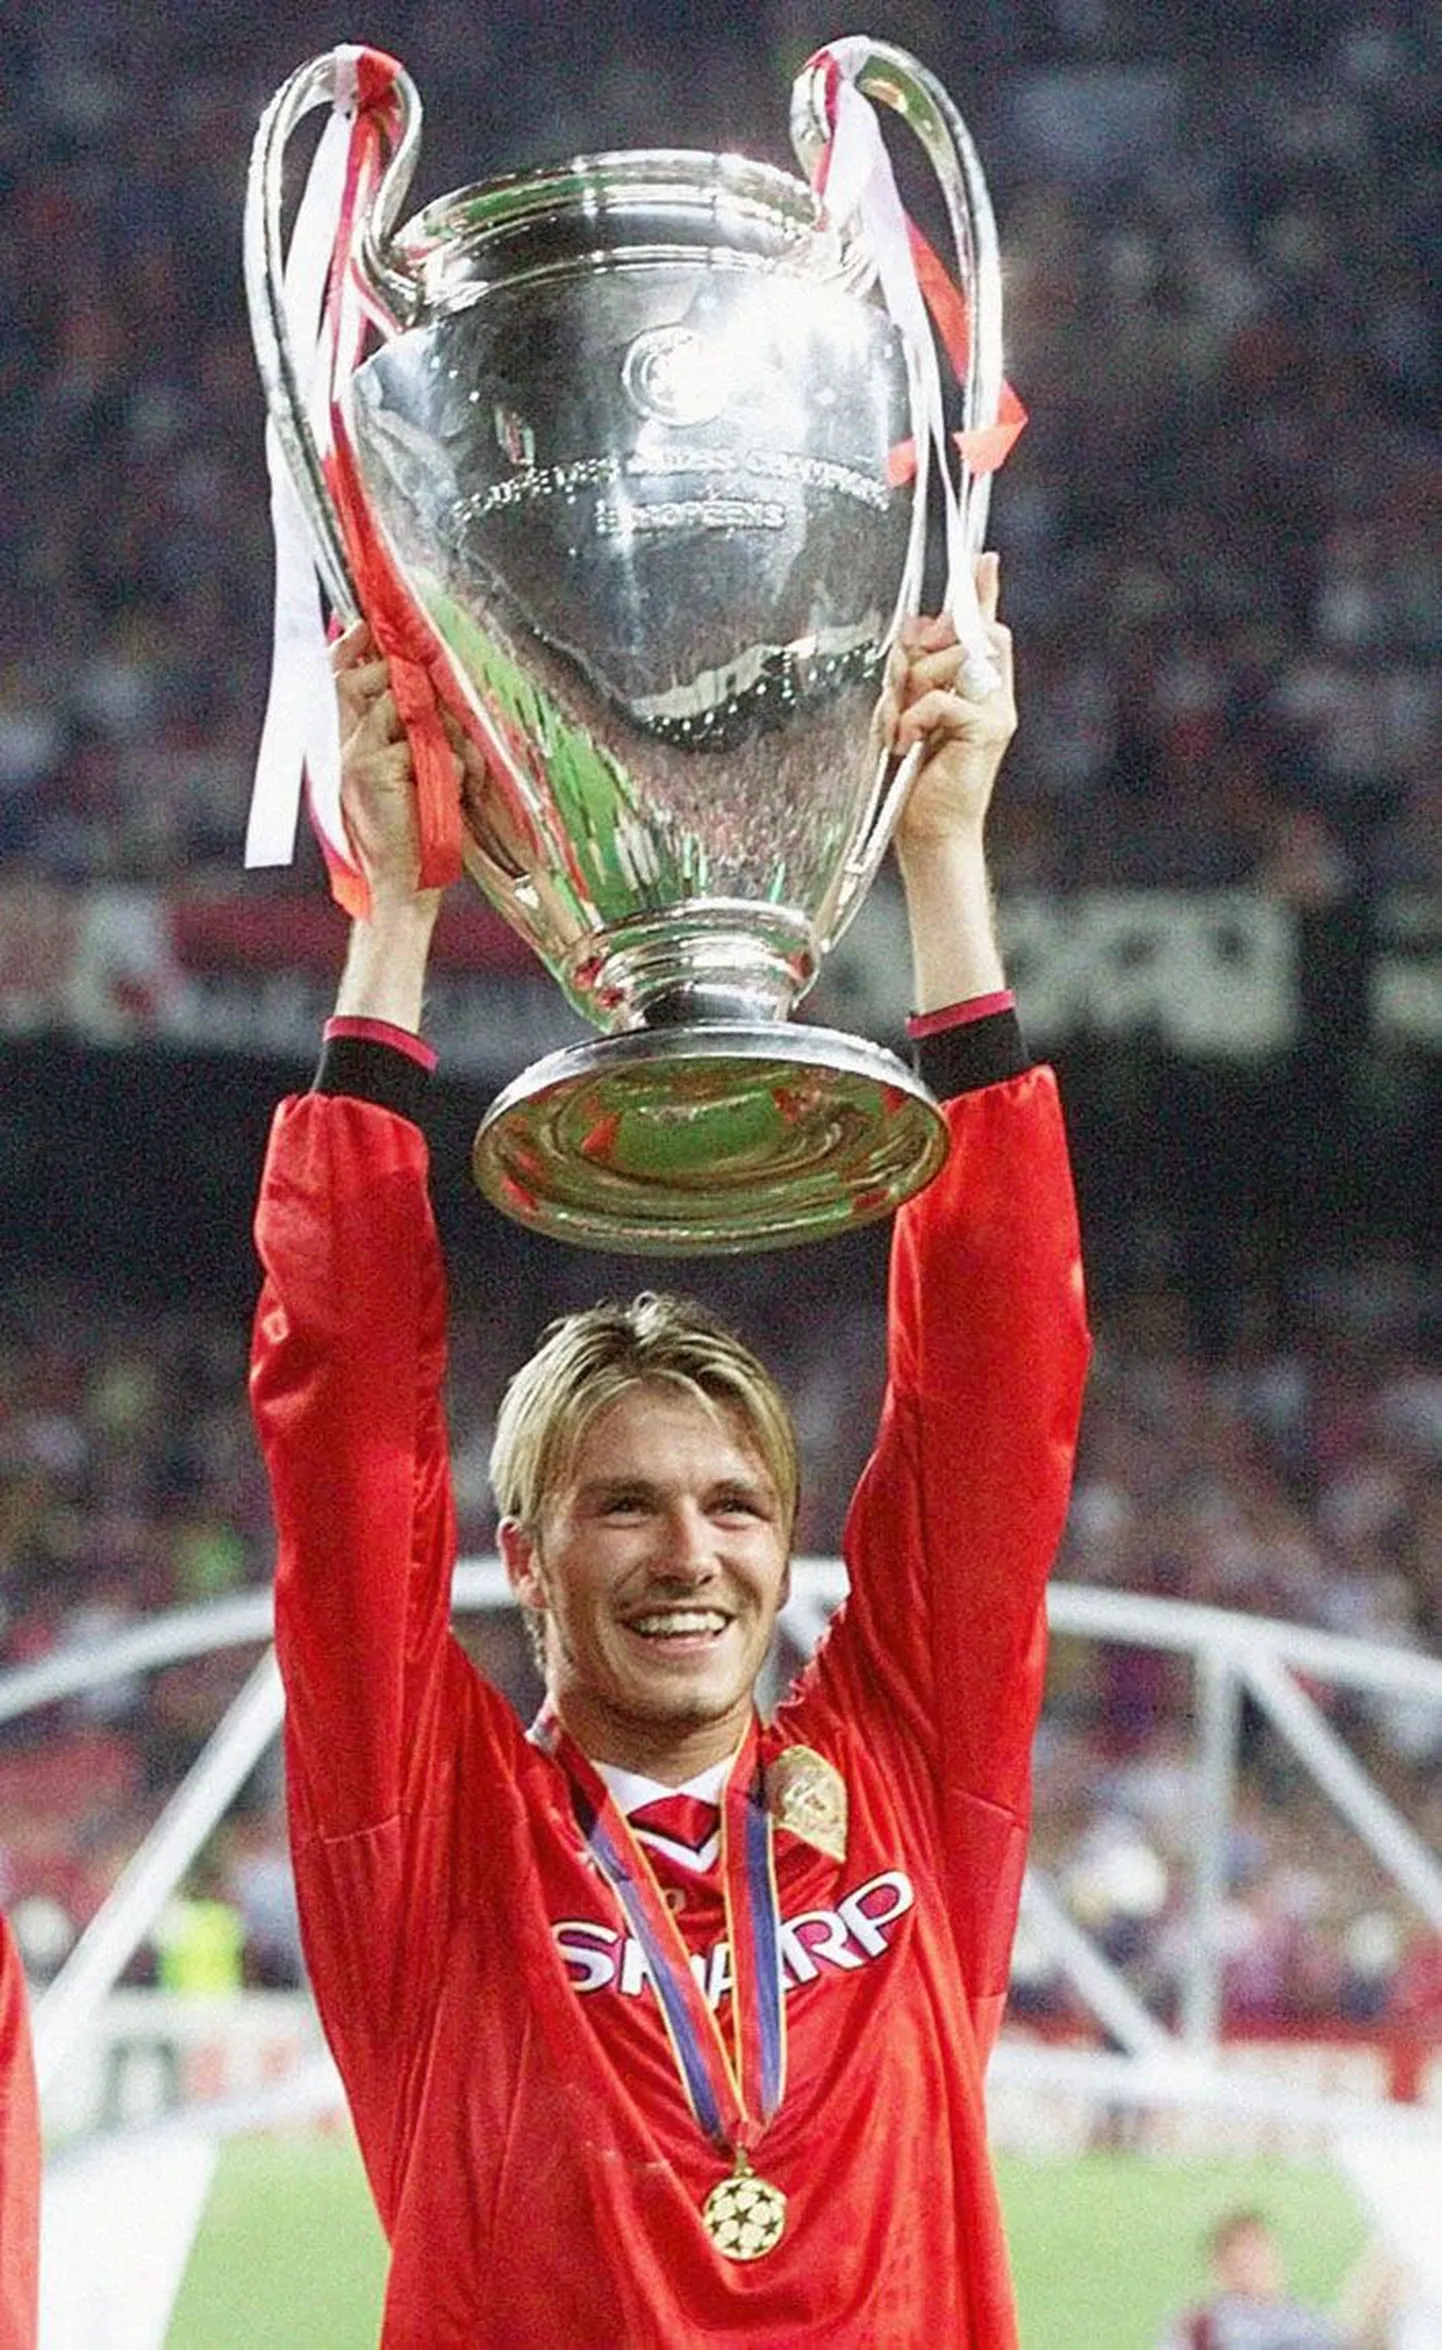 Karjääri edukamad aastad veetis David Beckham Manchester Unitedis, kus ta lisaks kuuele Inglismaa meistri tiitlile võitis 1999. aastal ka Meistrite liiga. Hooaega 1998/99 peetaksegi Beckhami karjääris üheks säravamaks ja tasub meenutada, et sellele eelnenud suvel sai ta MMi kaheksandikfinaalis Argentinaga mängides punase kaardi ja teenis sellega pikaks ajaks inglaste viha.